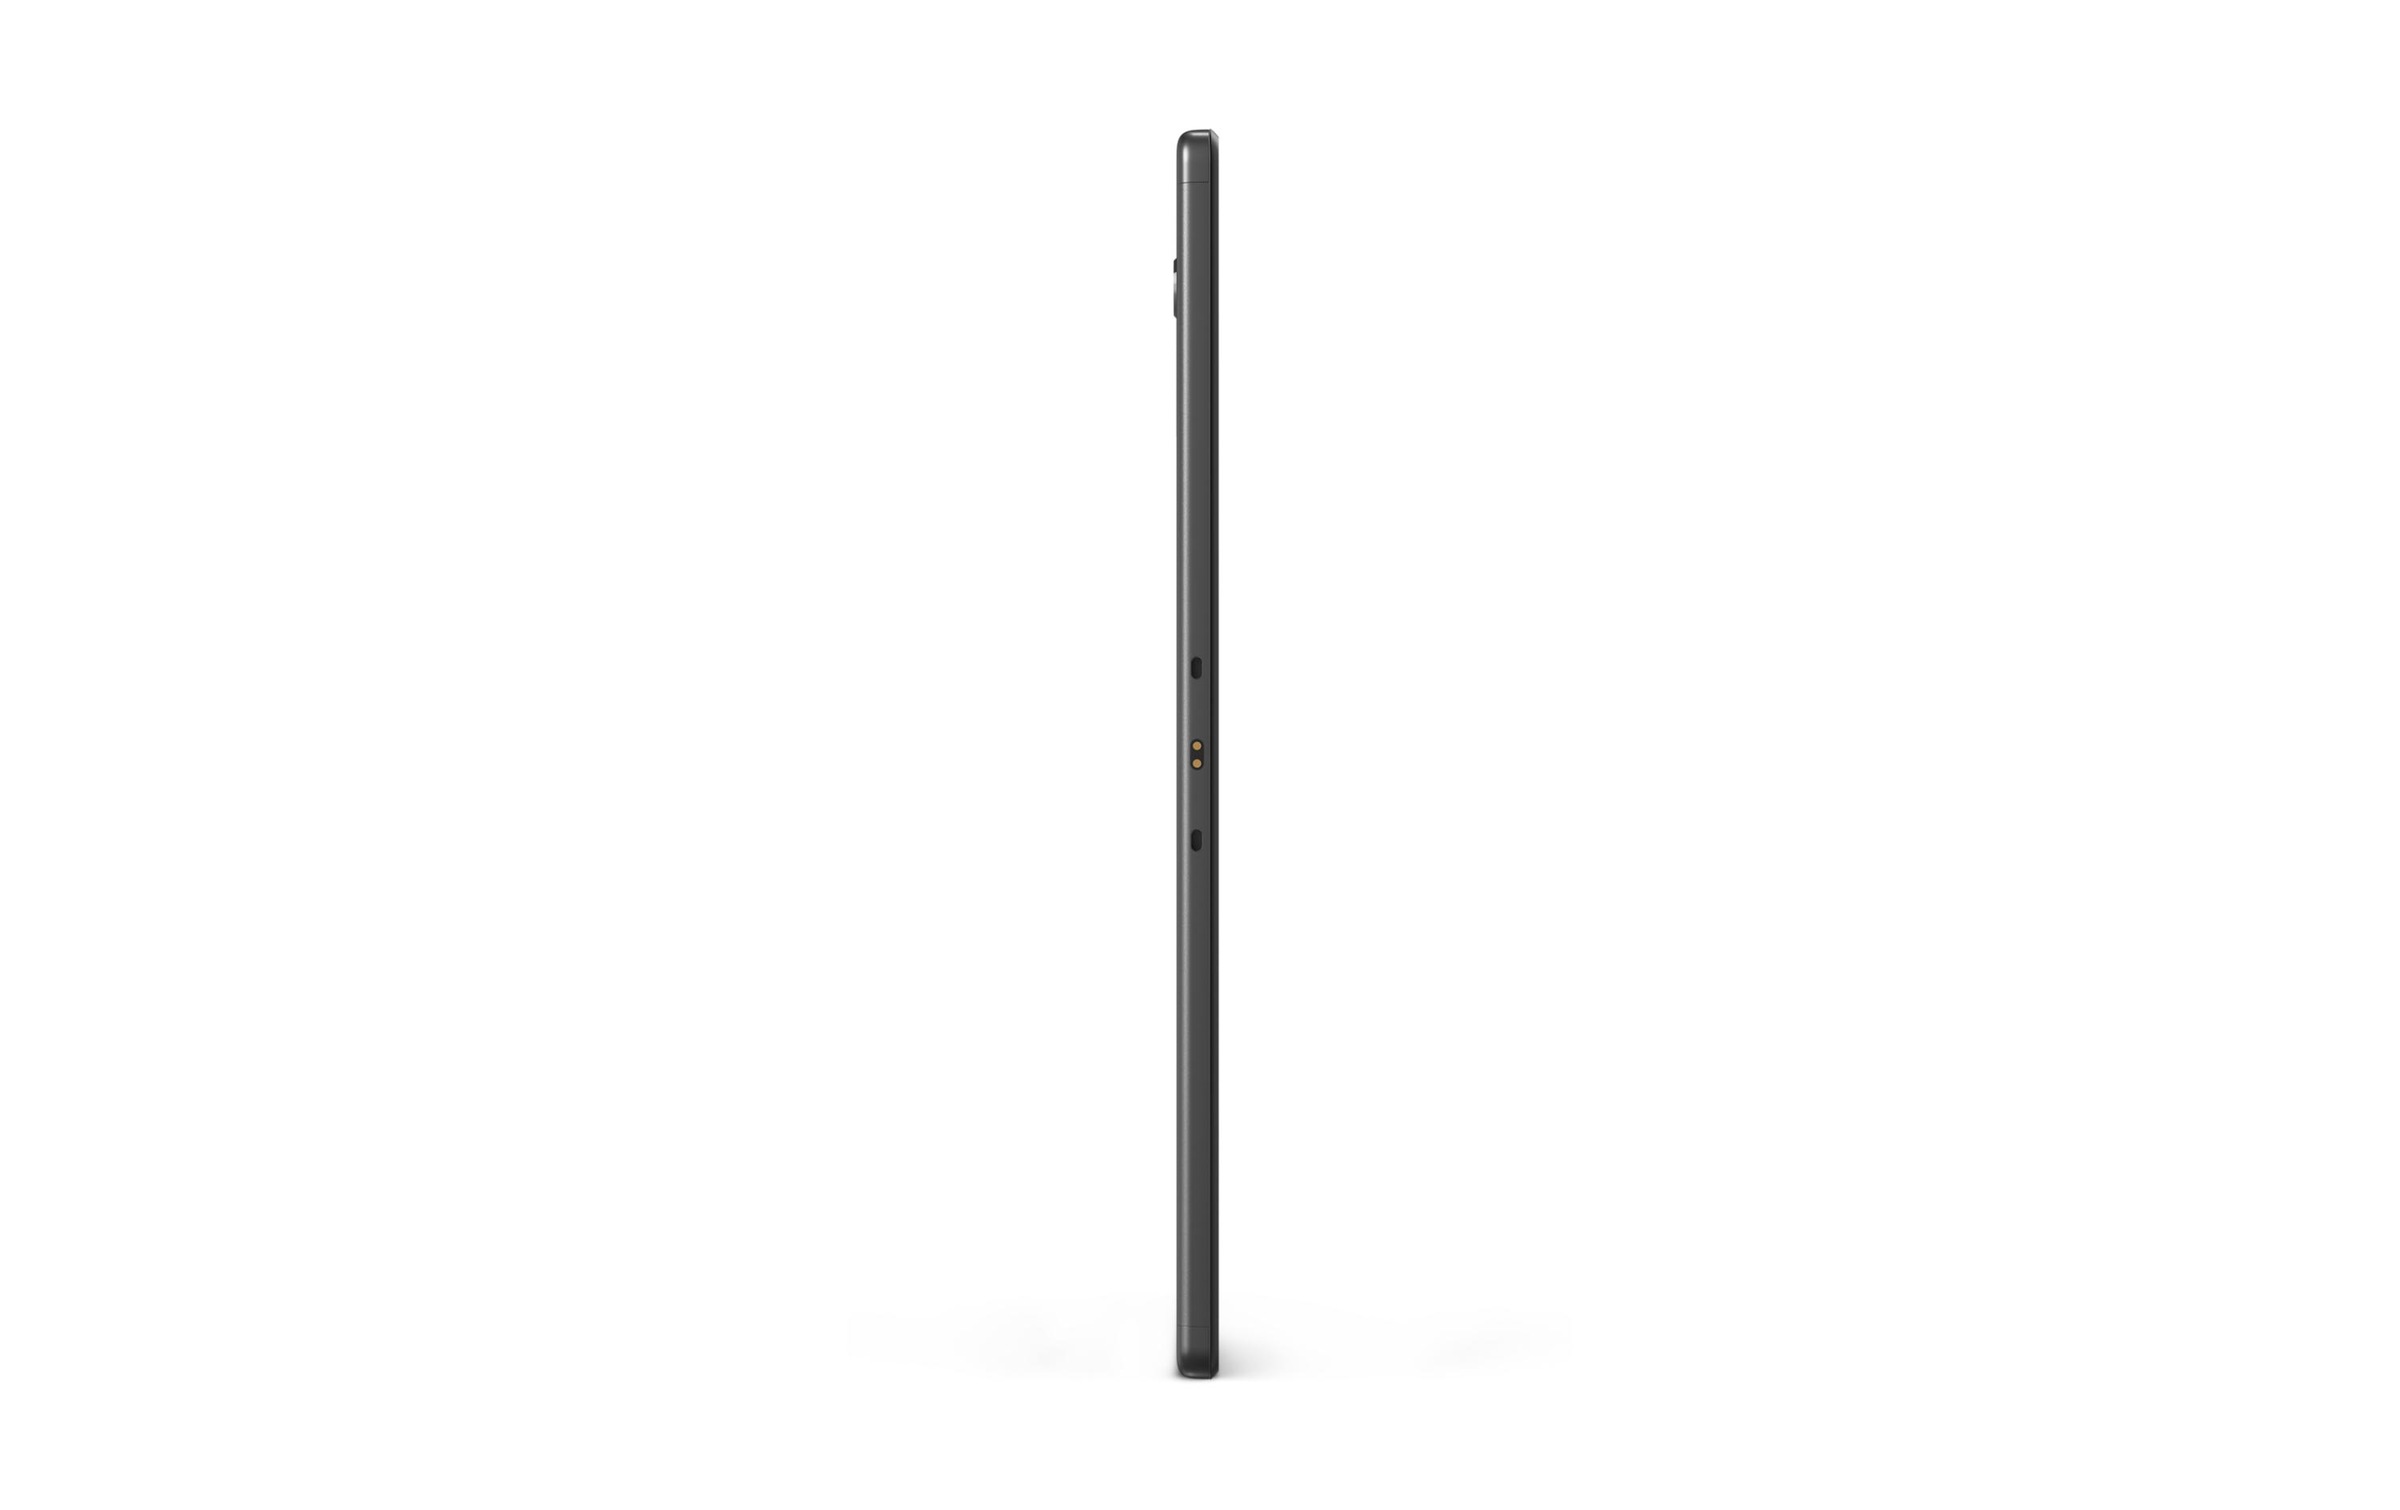 Lenovo Tablet »Tab M10 HD (2nd Gen) 32 GB Grau«, (Android)